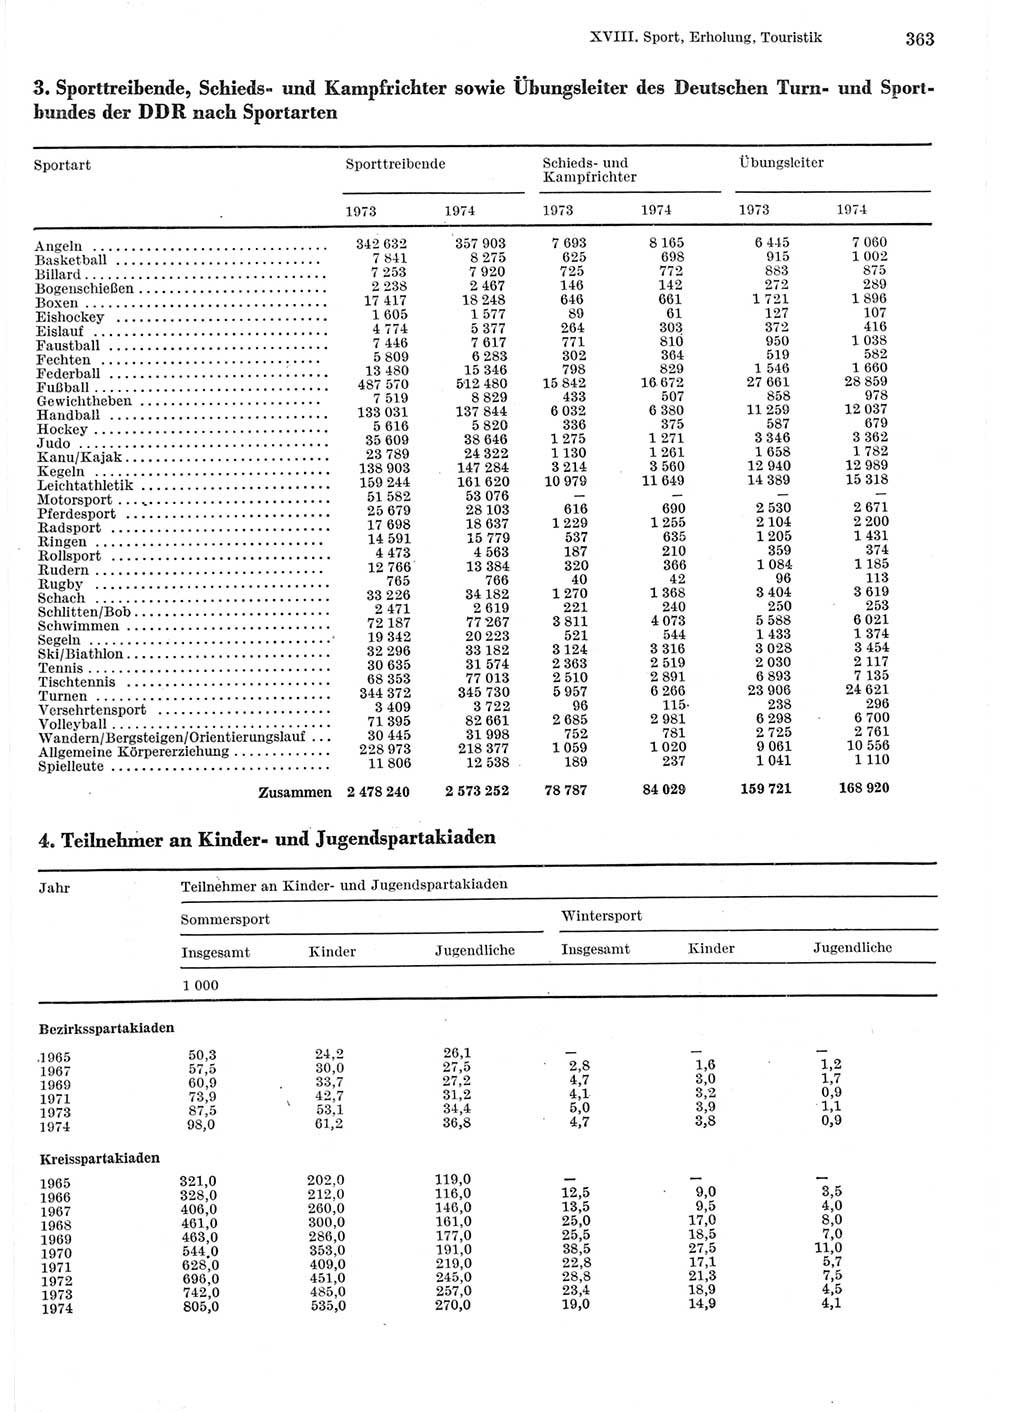 Statistisches Jahrbuch der Deutschen Demokratischen Republik (DDR) 1975, Seite 363 (Stat. Jb. DDR 1975, S. 363)